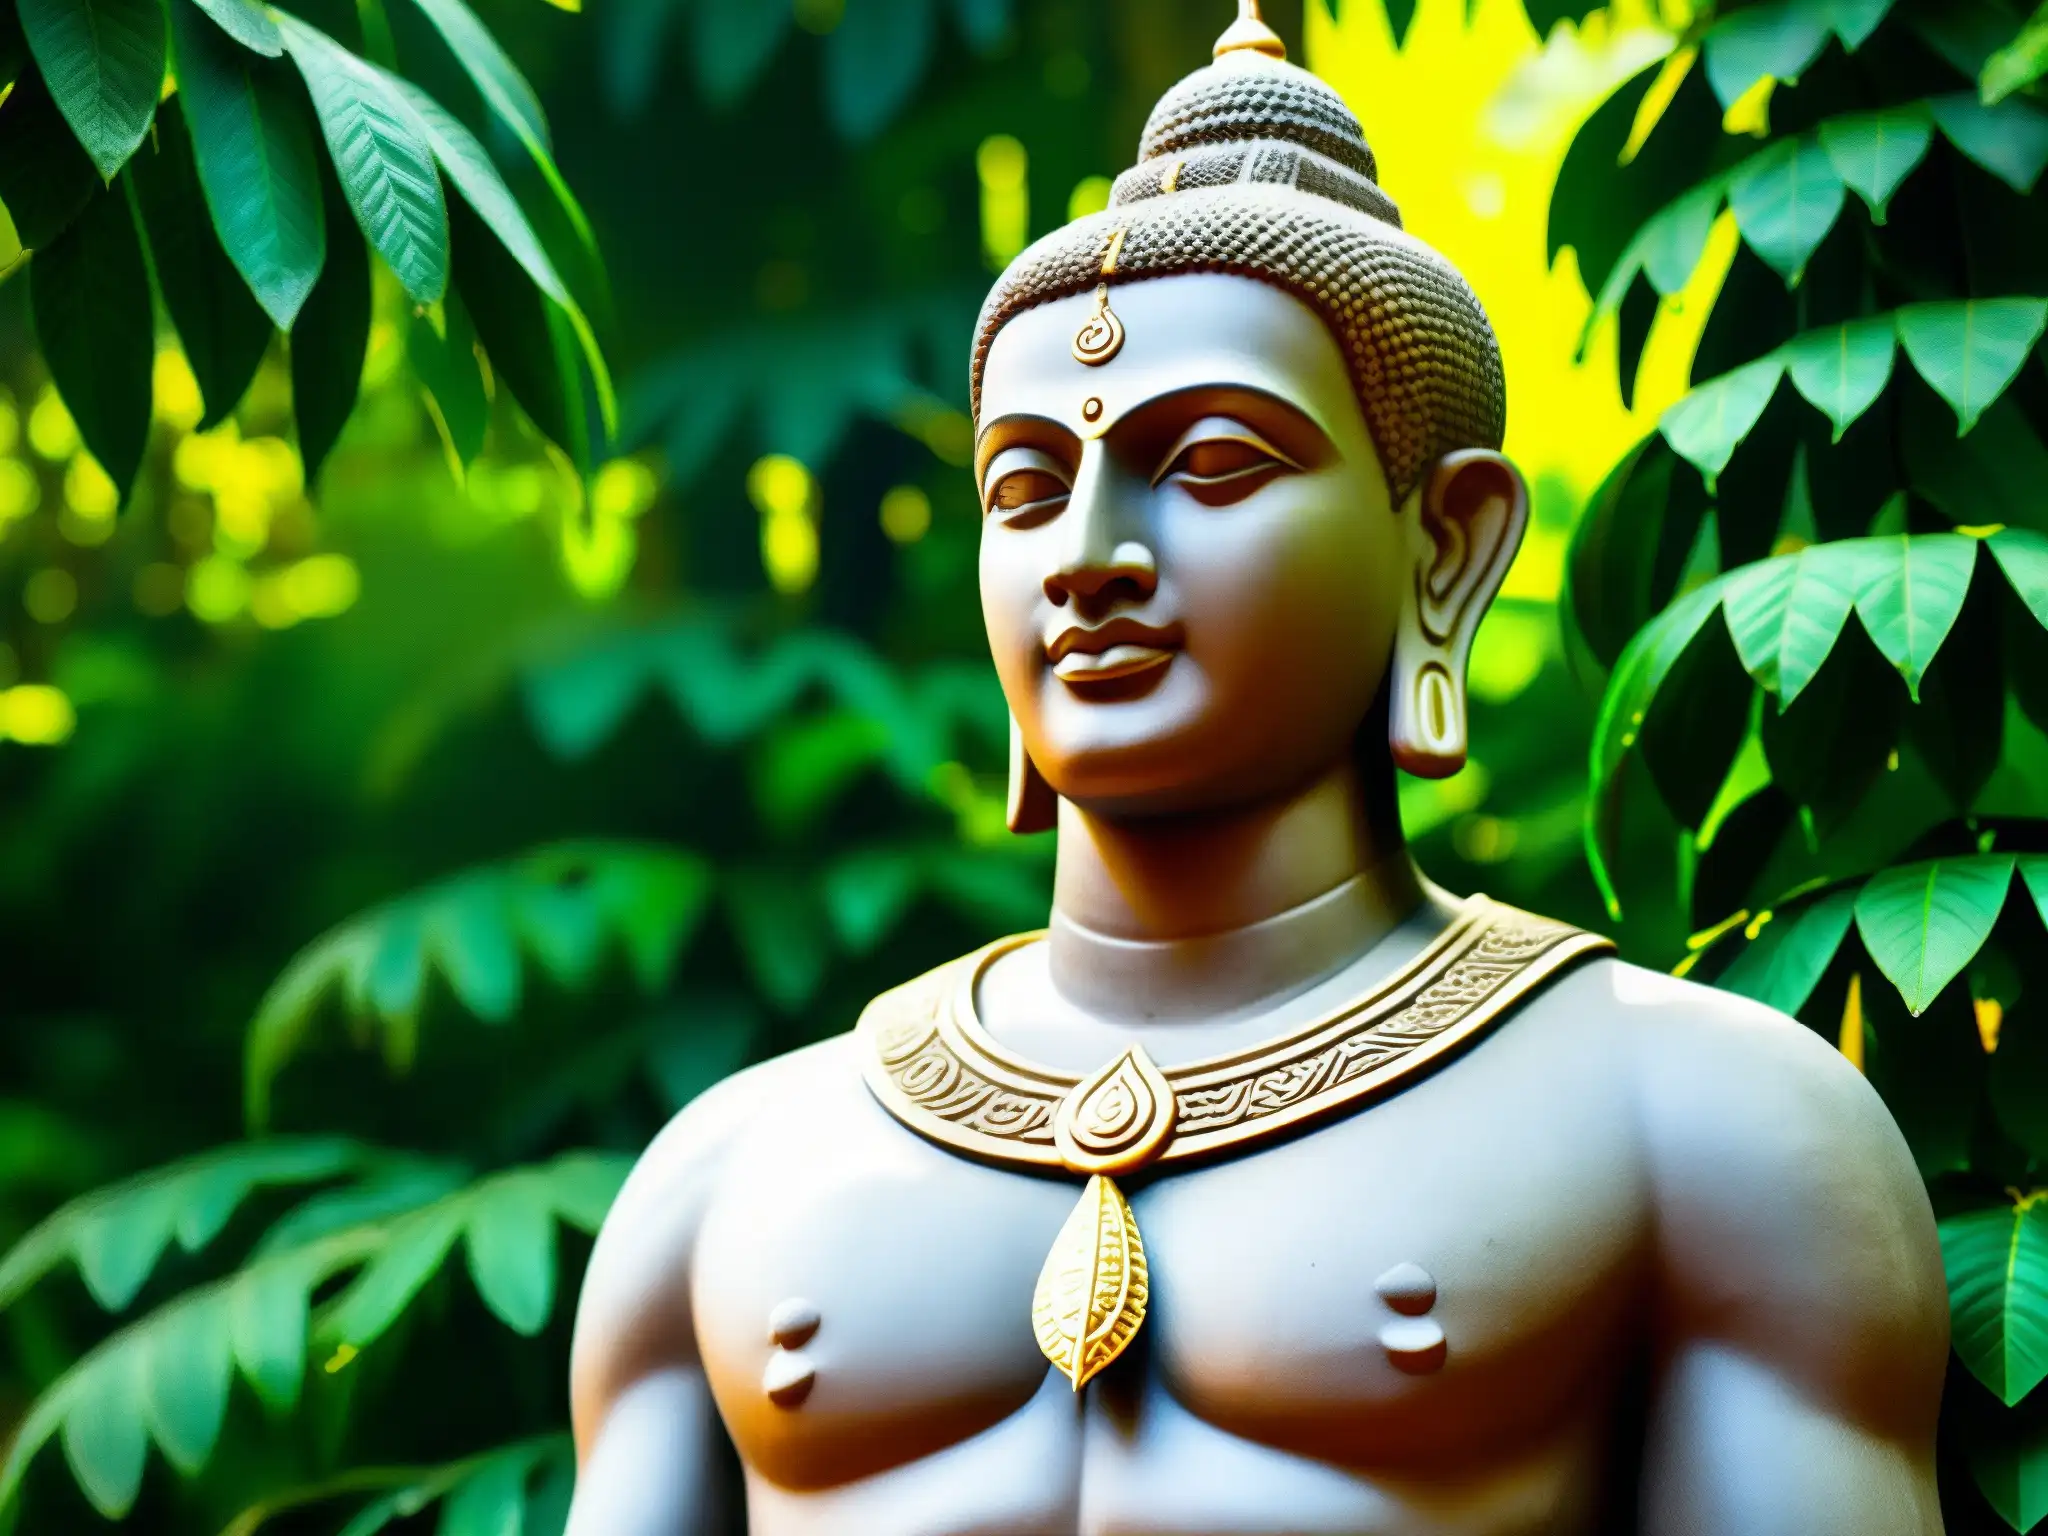 Estatua del Hombre Sin Rostro en Sri Lanka, rodeada de exuberante vegetación, evocando el misterio del mito